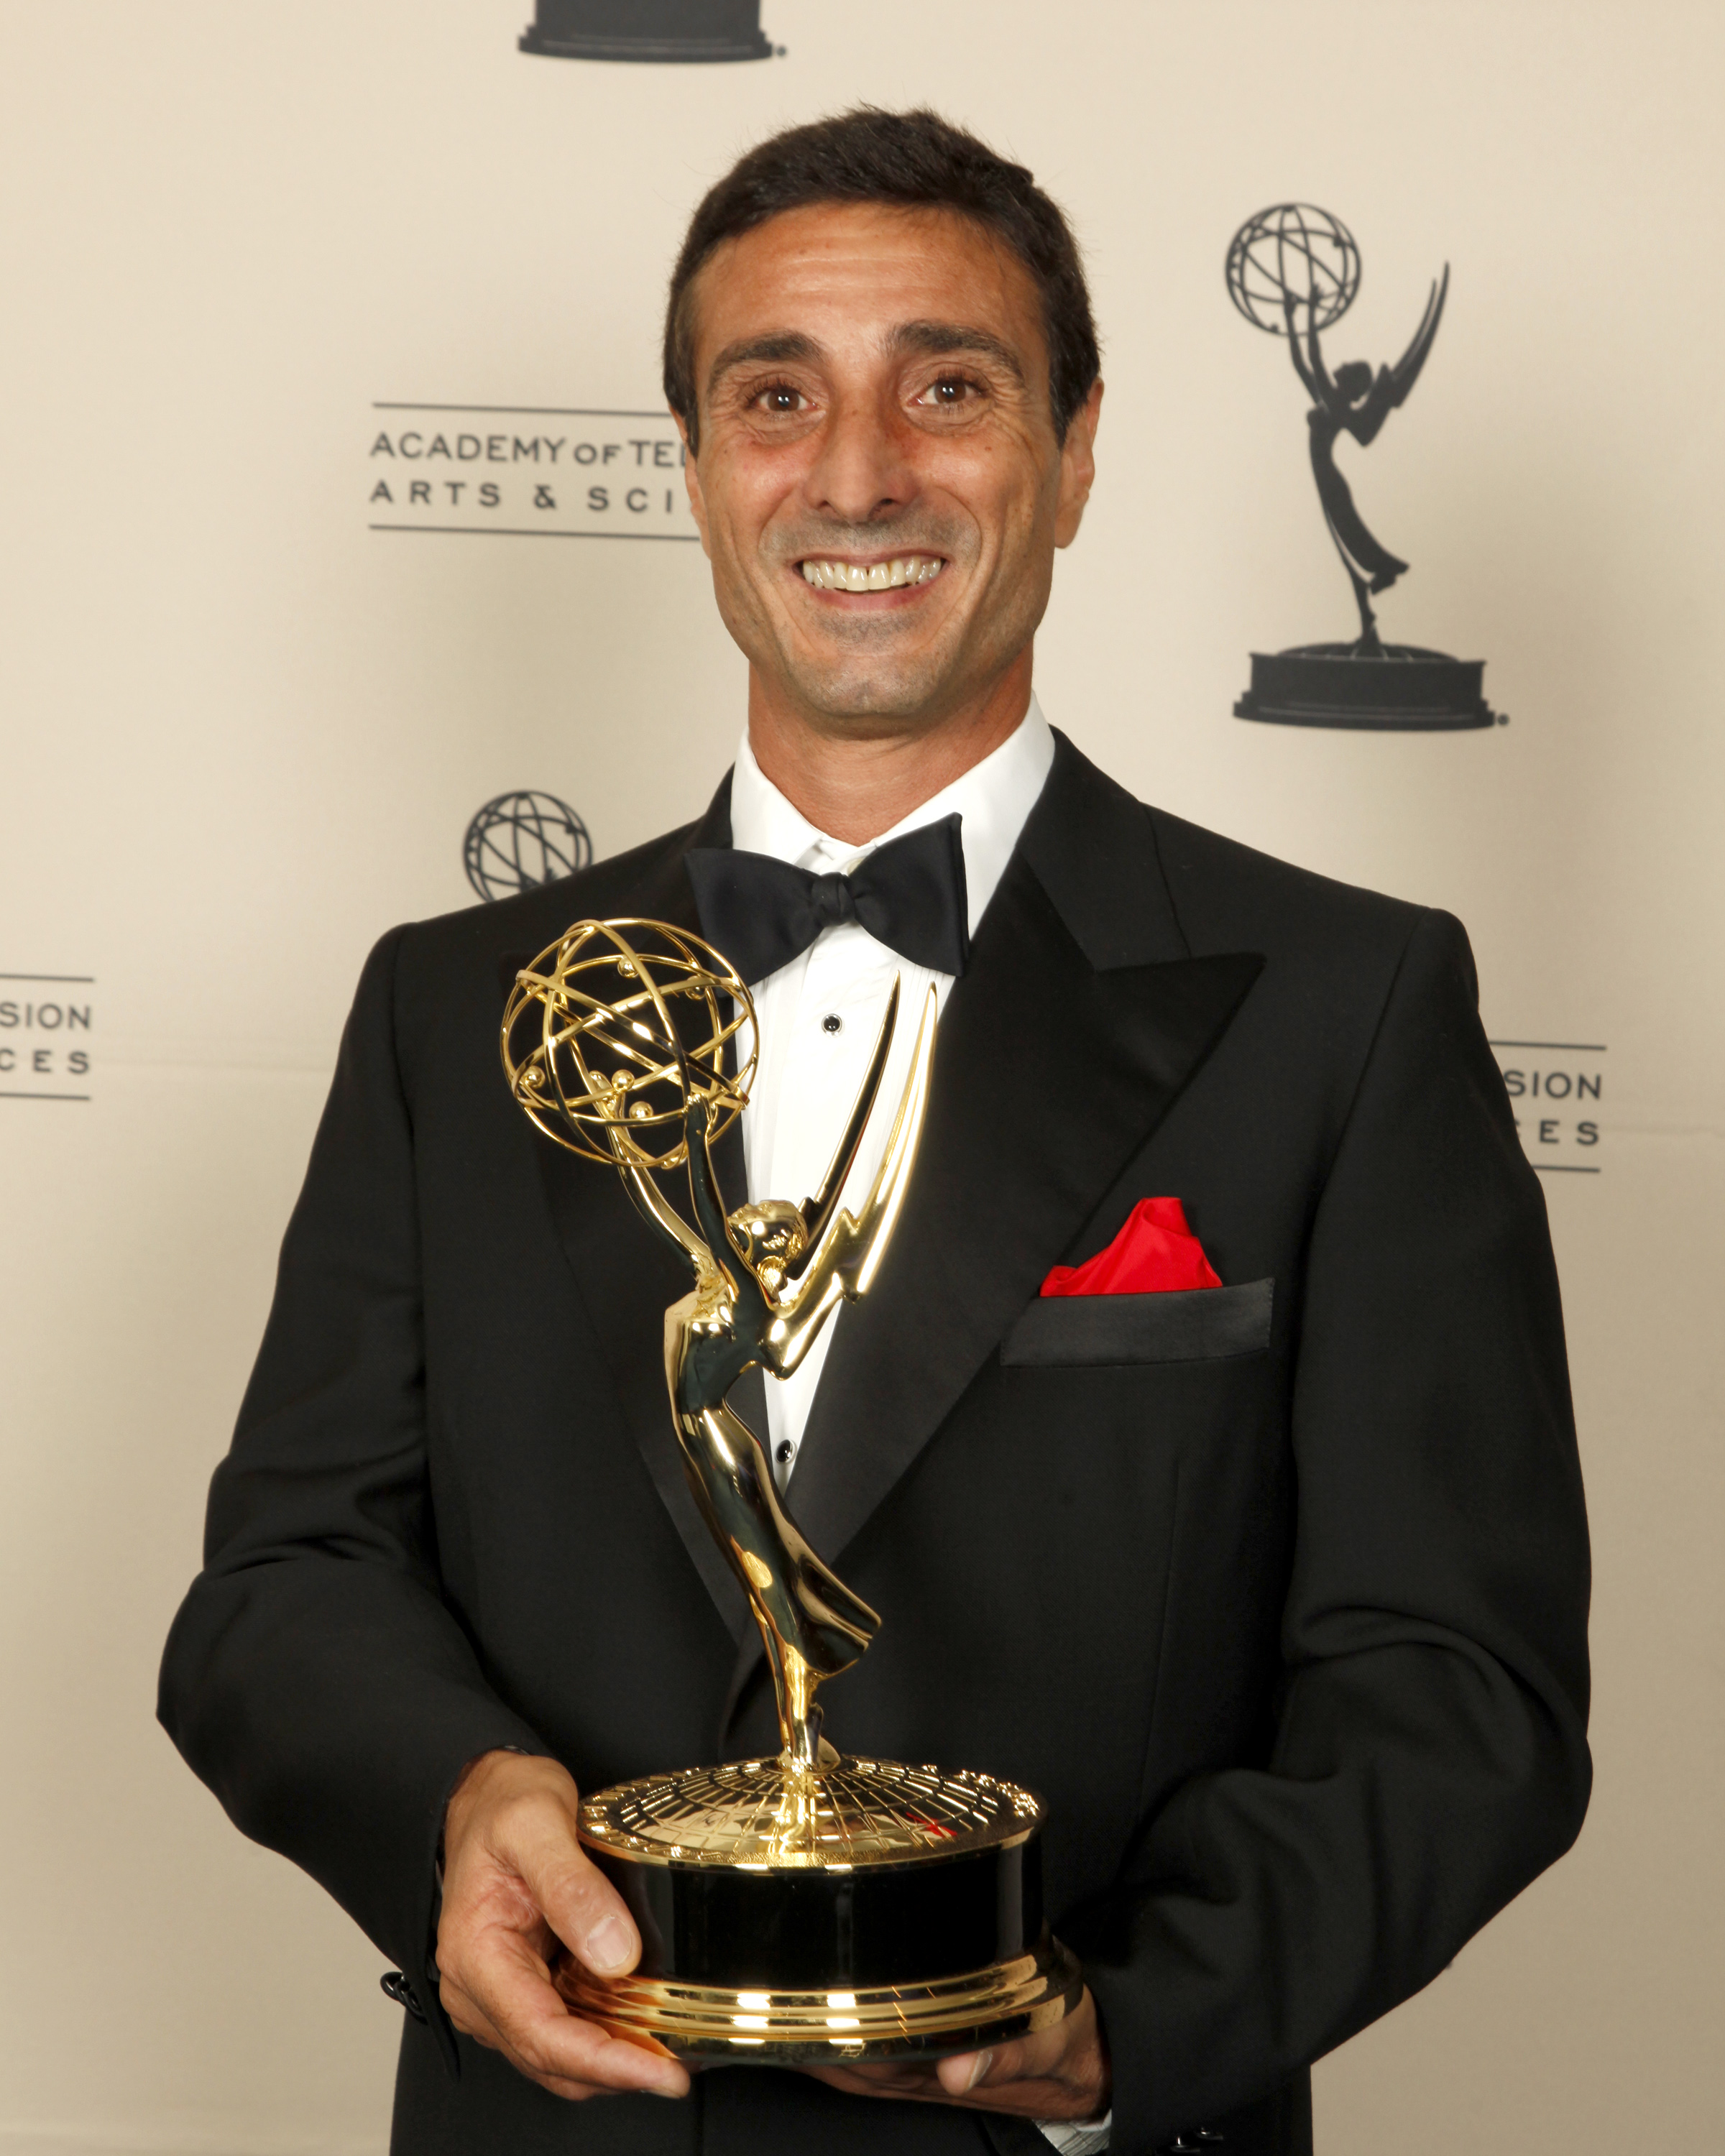 2009 Emmy for entourage season 5